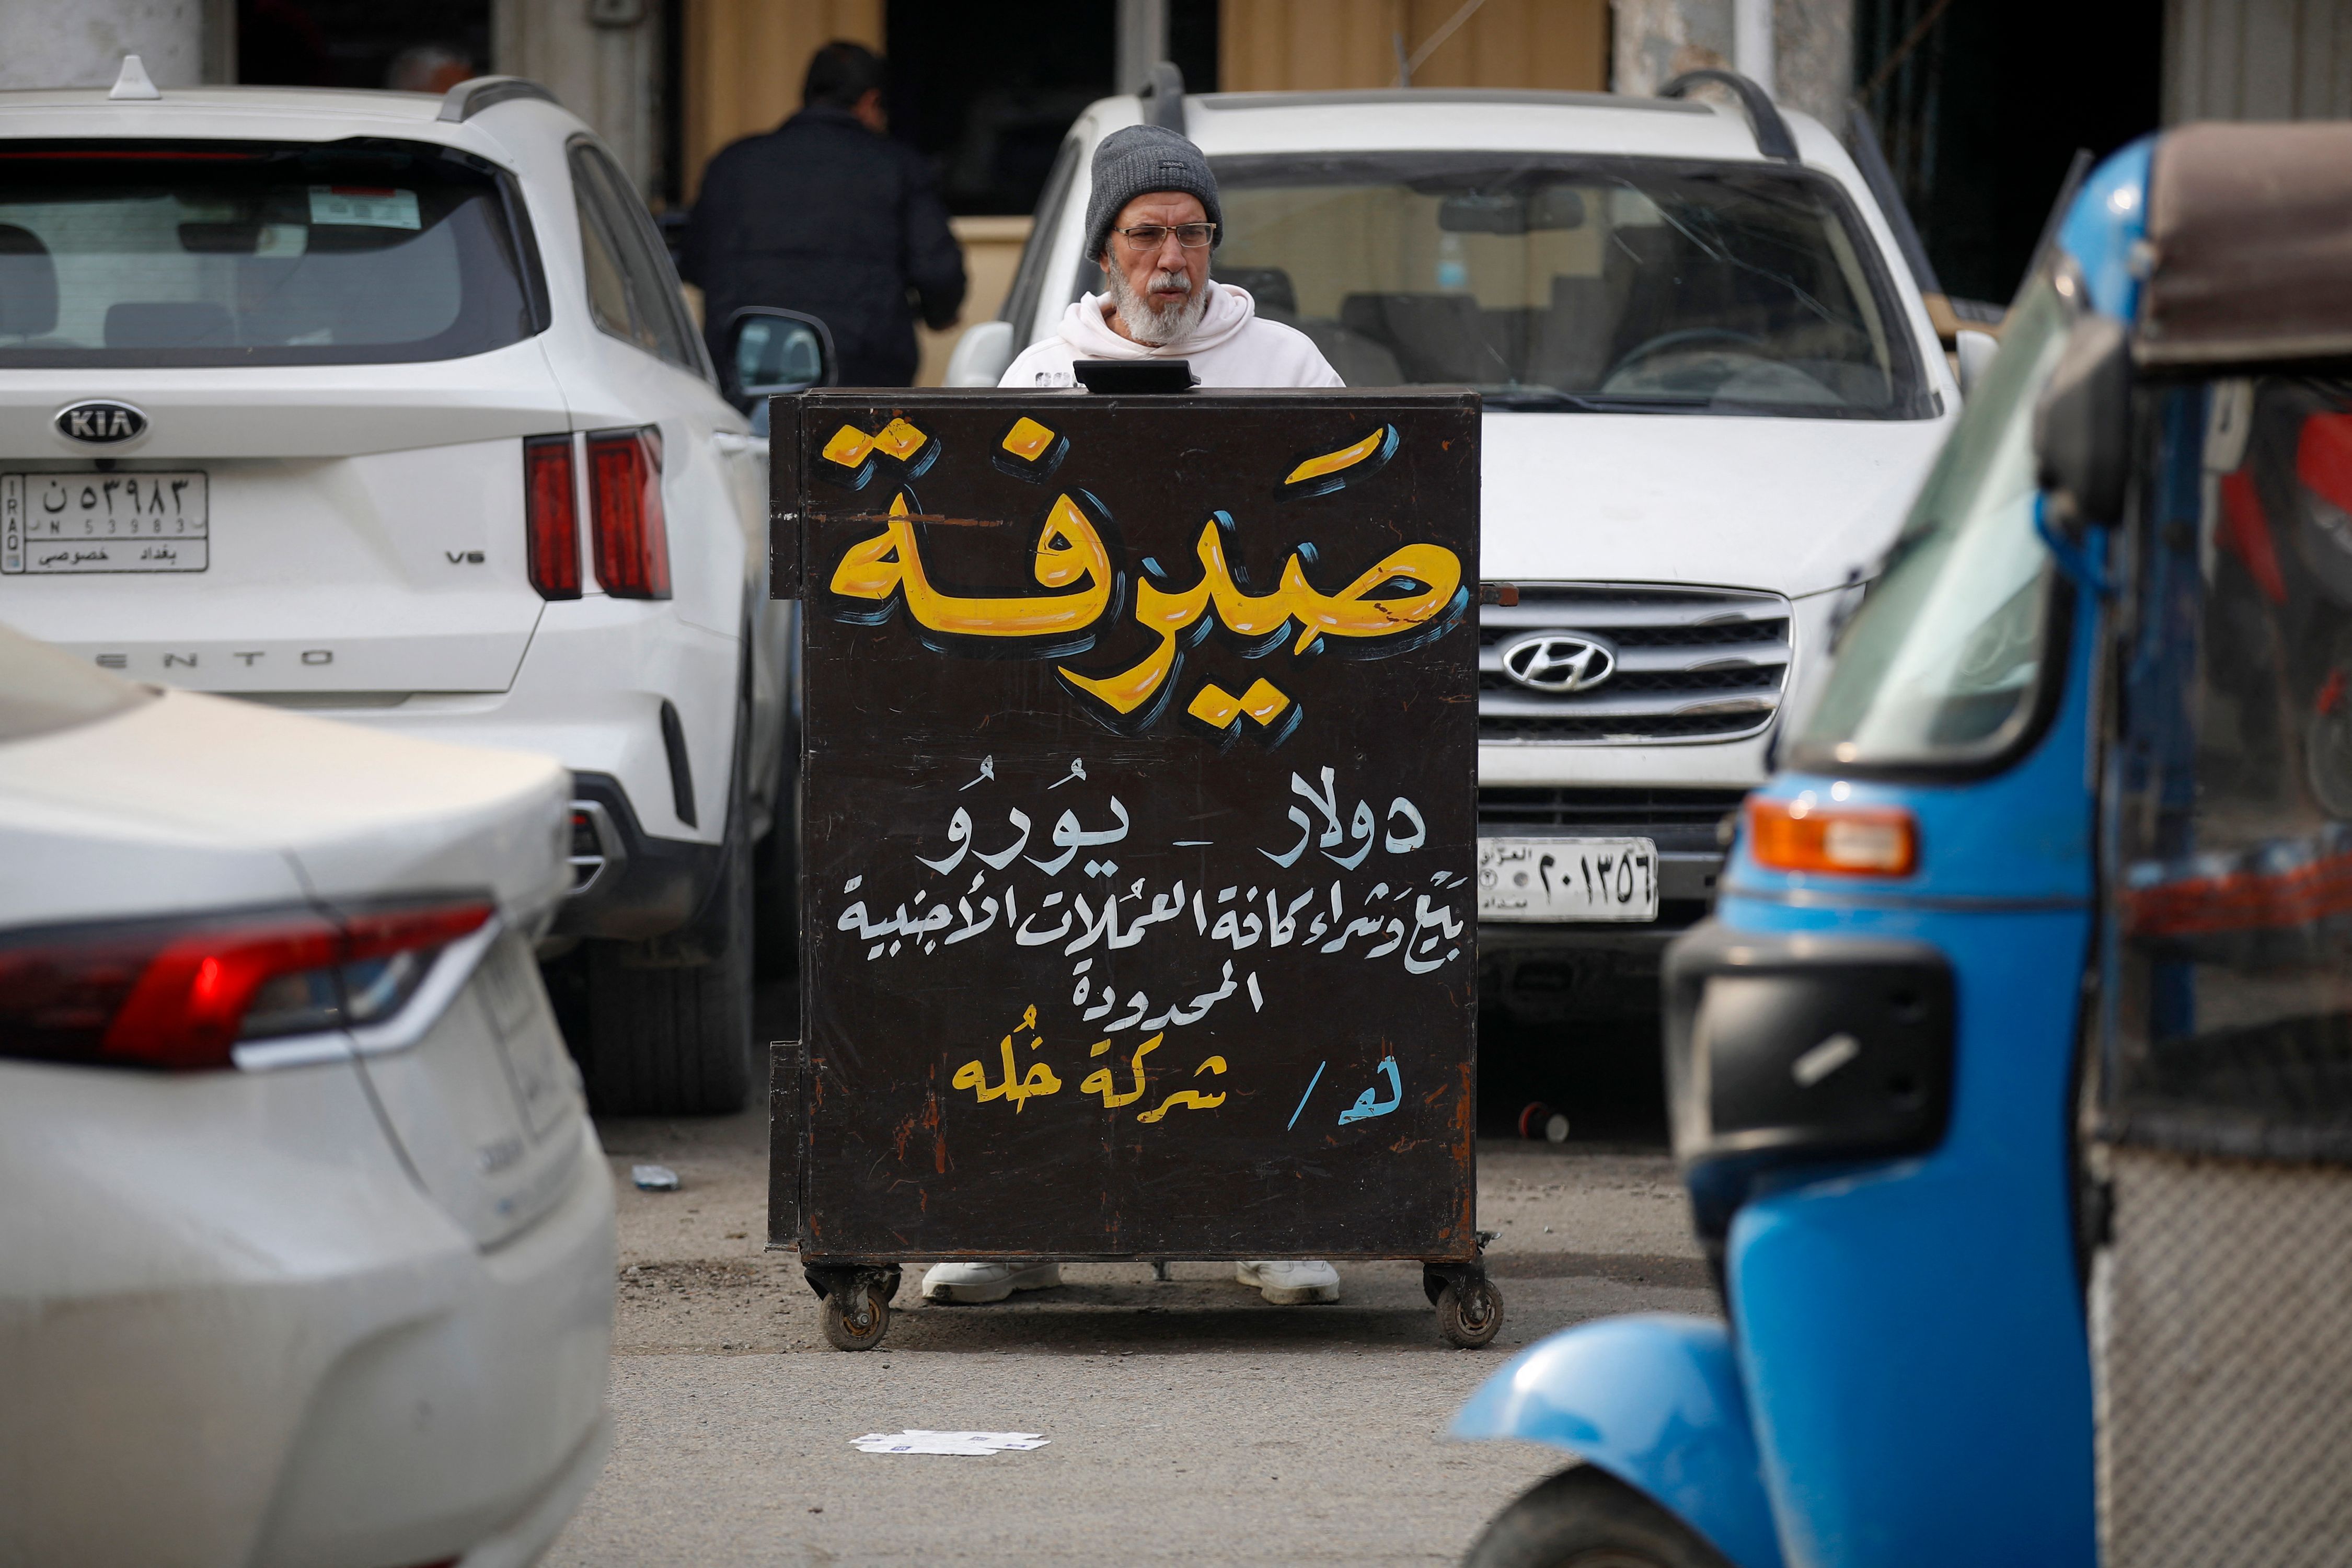 أزمة الدولار تؤجج الشارع العراقي رغم إطاحة محافظ المركزي